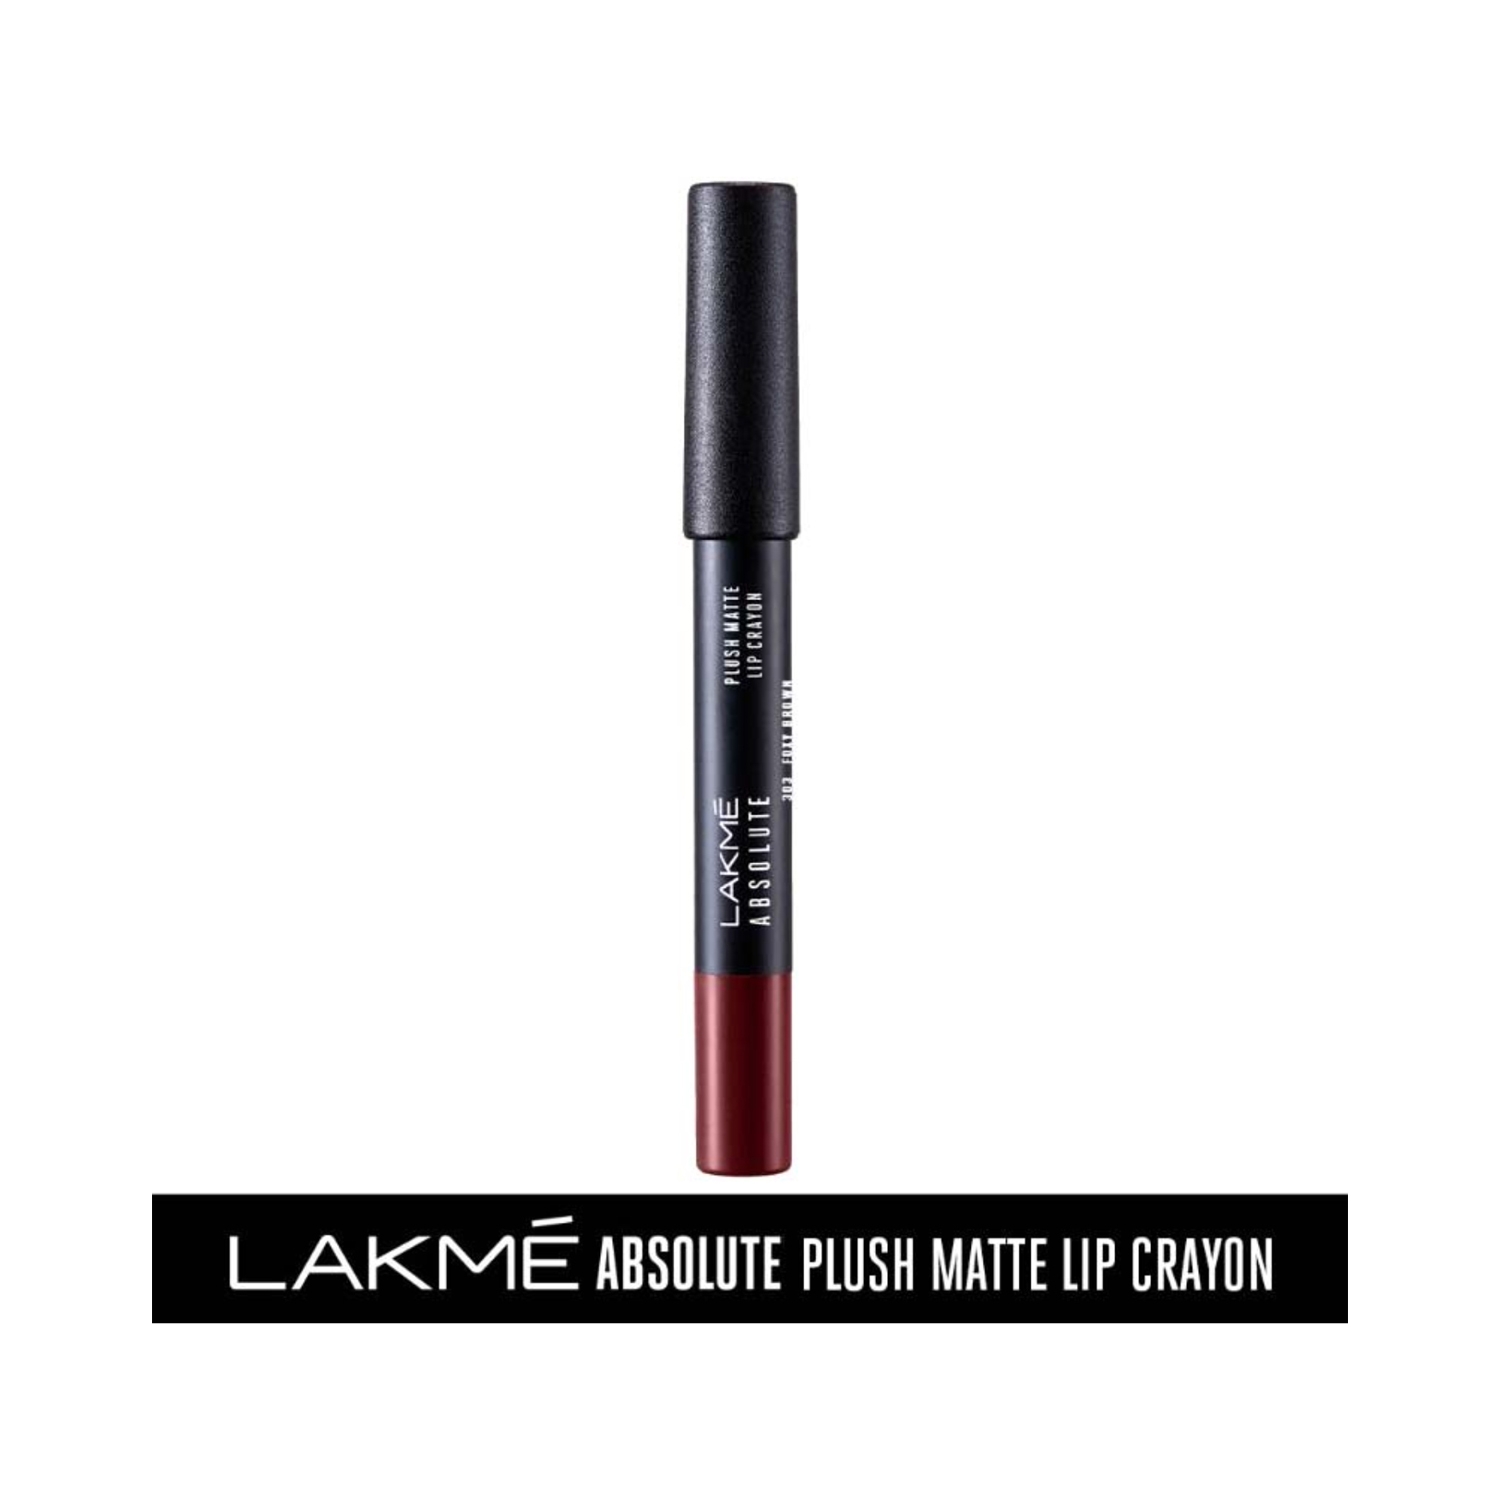 Lakme | Lakme Absolute Plush Matte Lip Crayon - 303 Foxy Brown (2.8g)